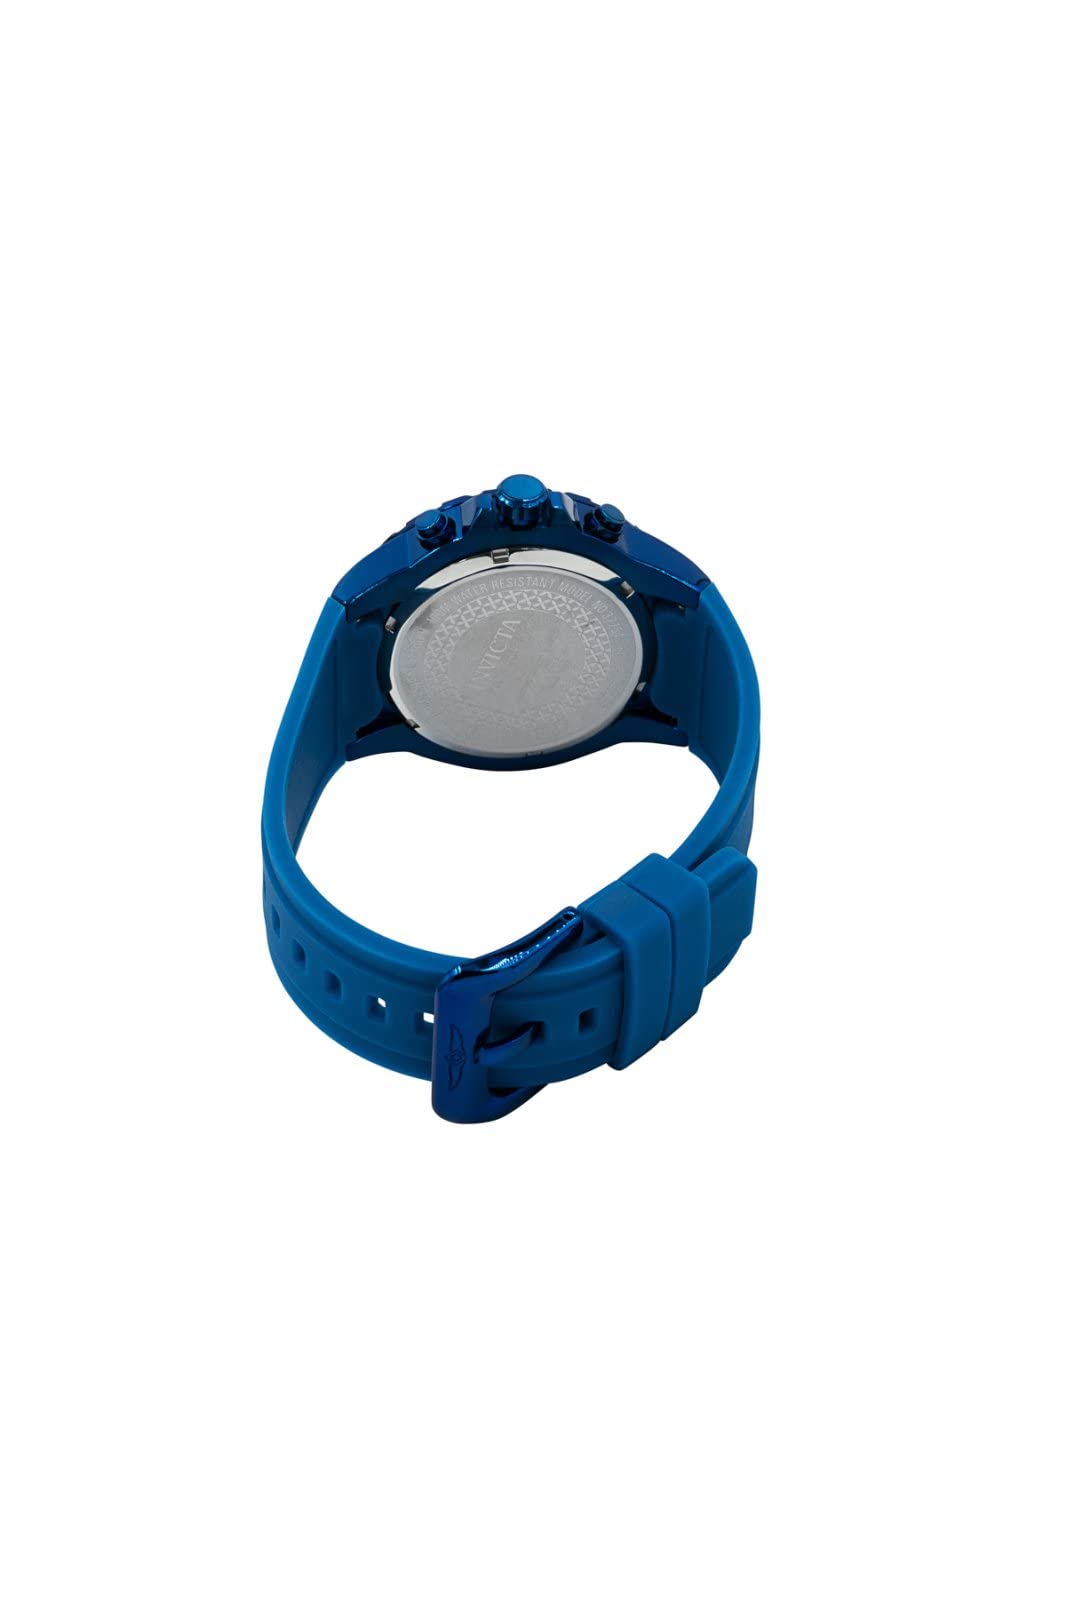 Invicta Men's Pro Diver 48mm Silicone Quartz Watch, Blue (Model: 37754)